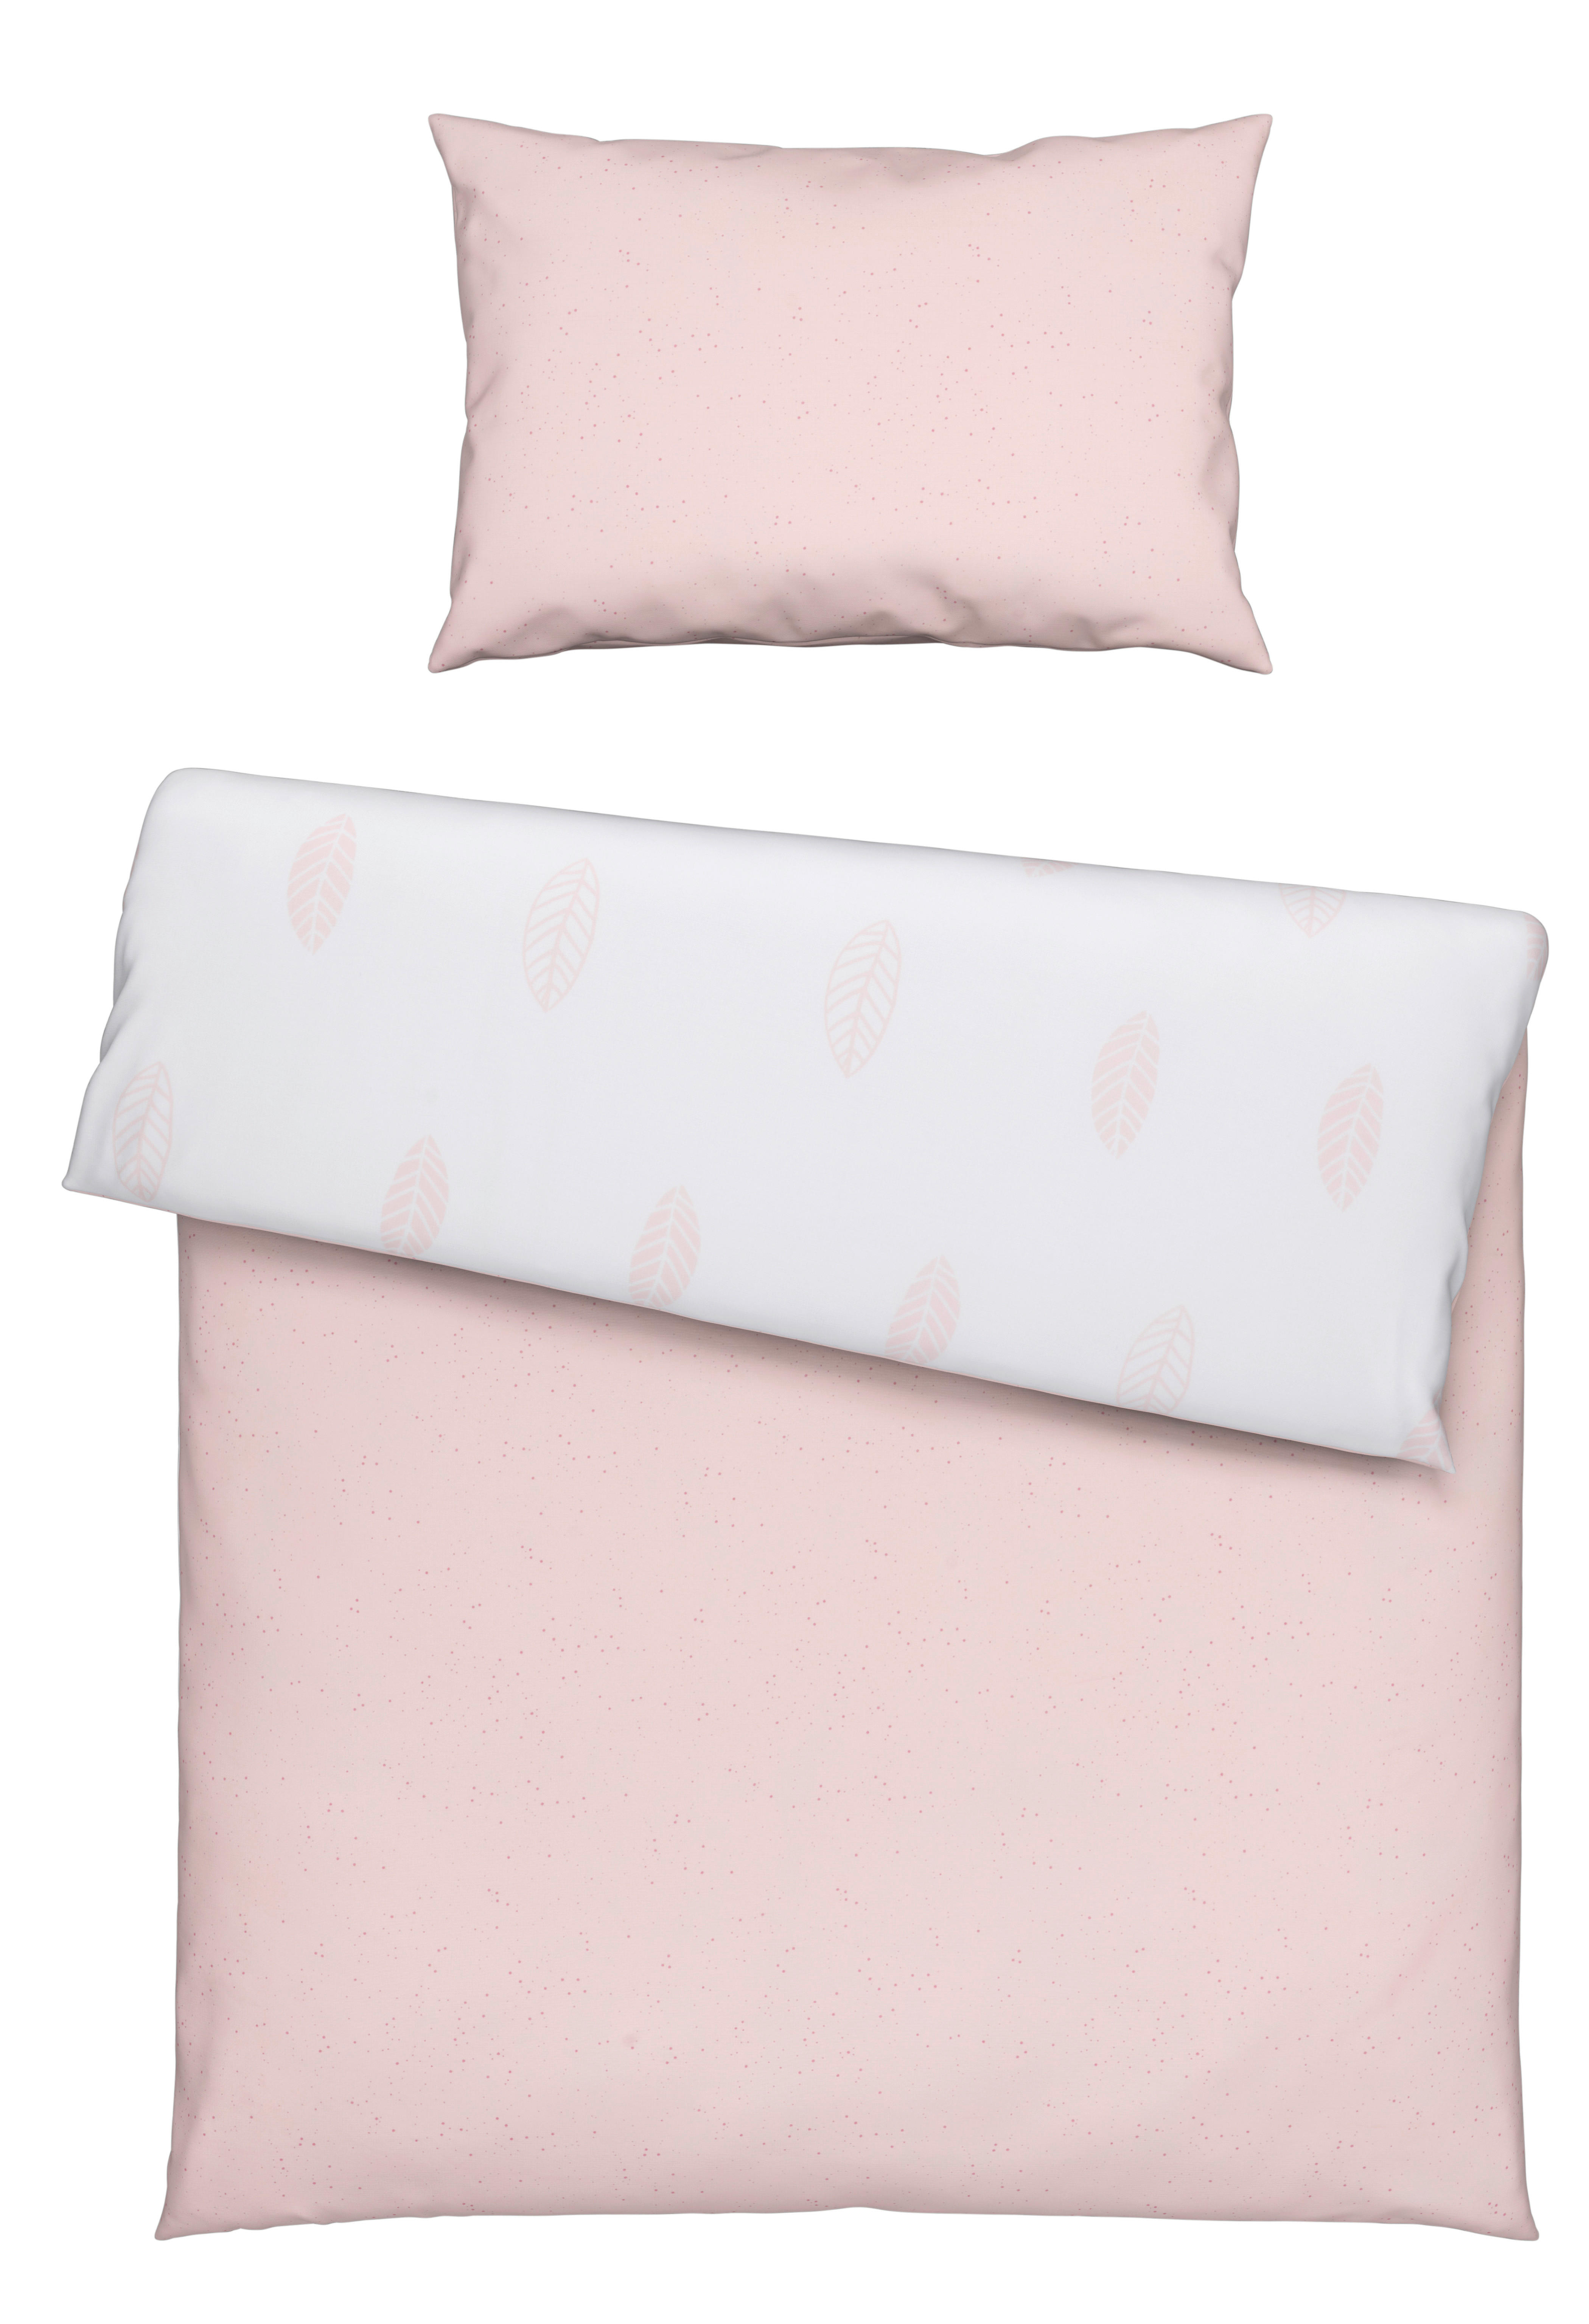 POVLEČENÍ PRO MIMINKO, 100/135 cm, růžová, bílá - bílá/růžová, Basics, textil (100/135cm) - Avelia